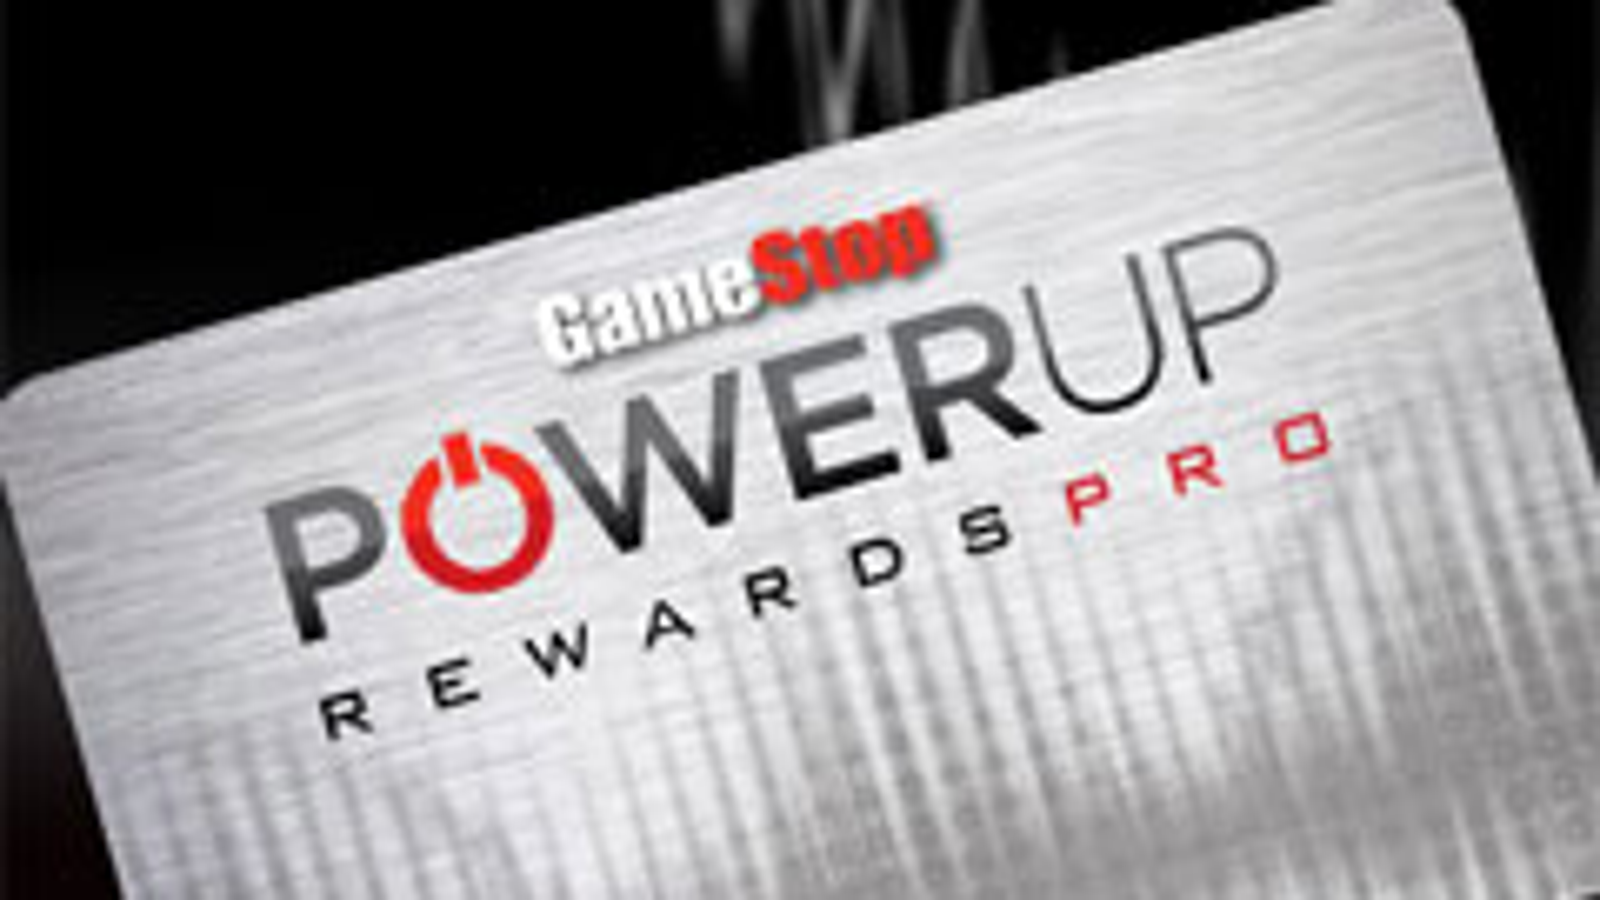 powerup rewards elite pro membership